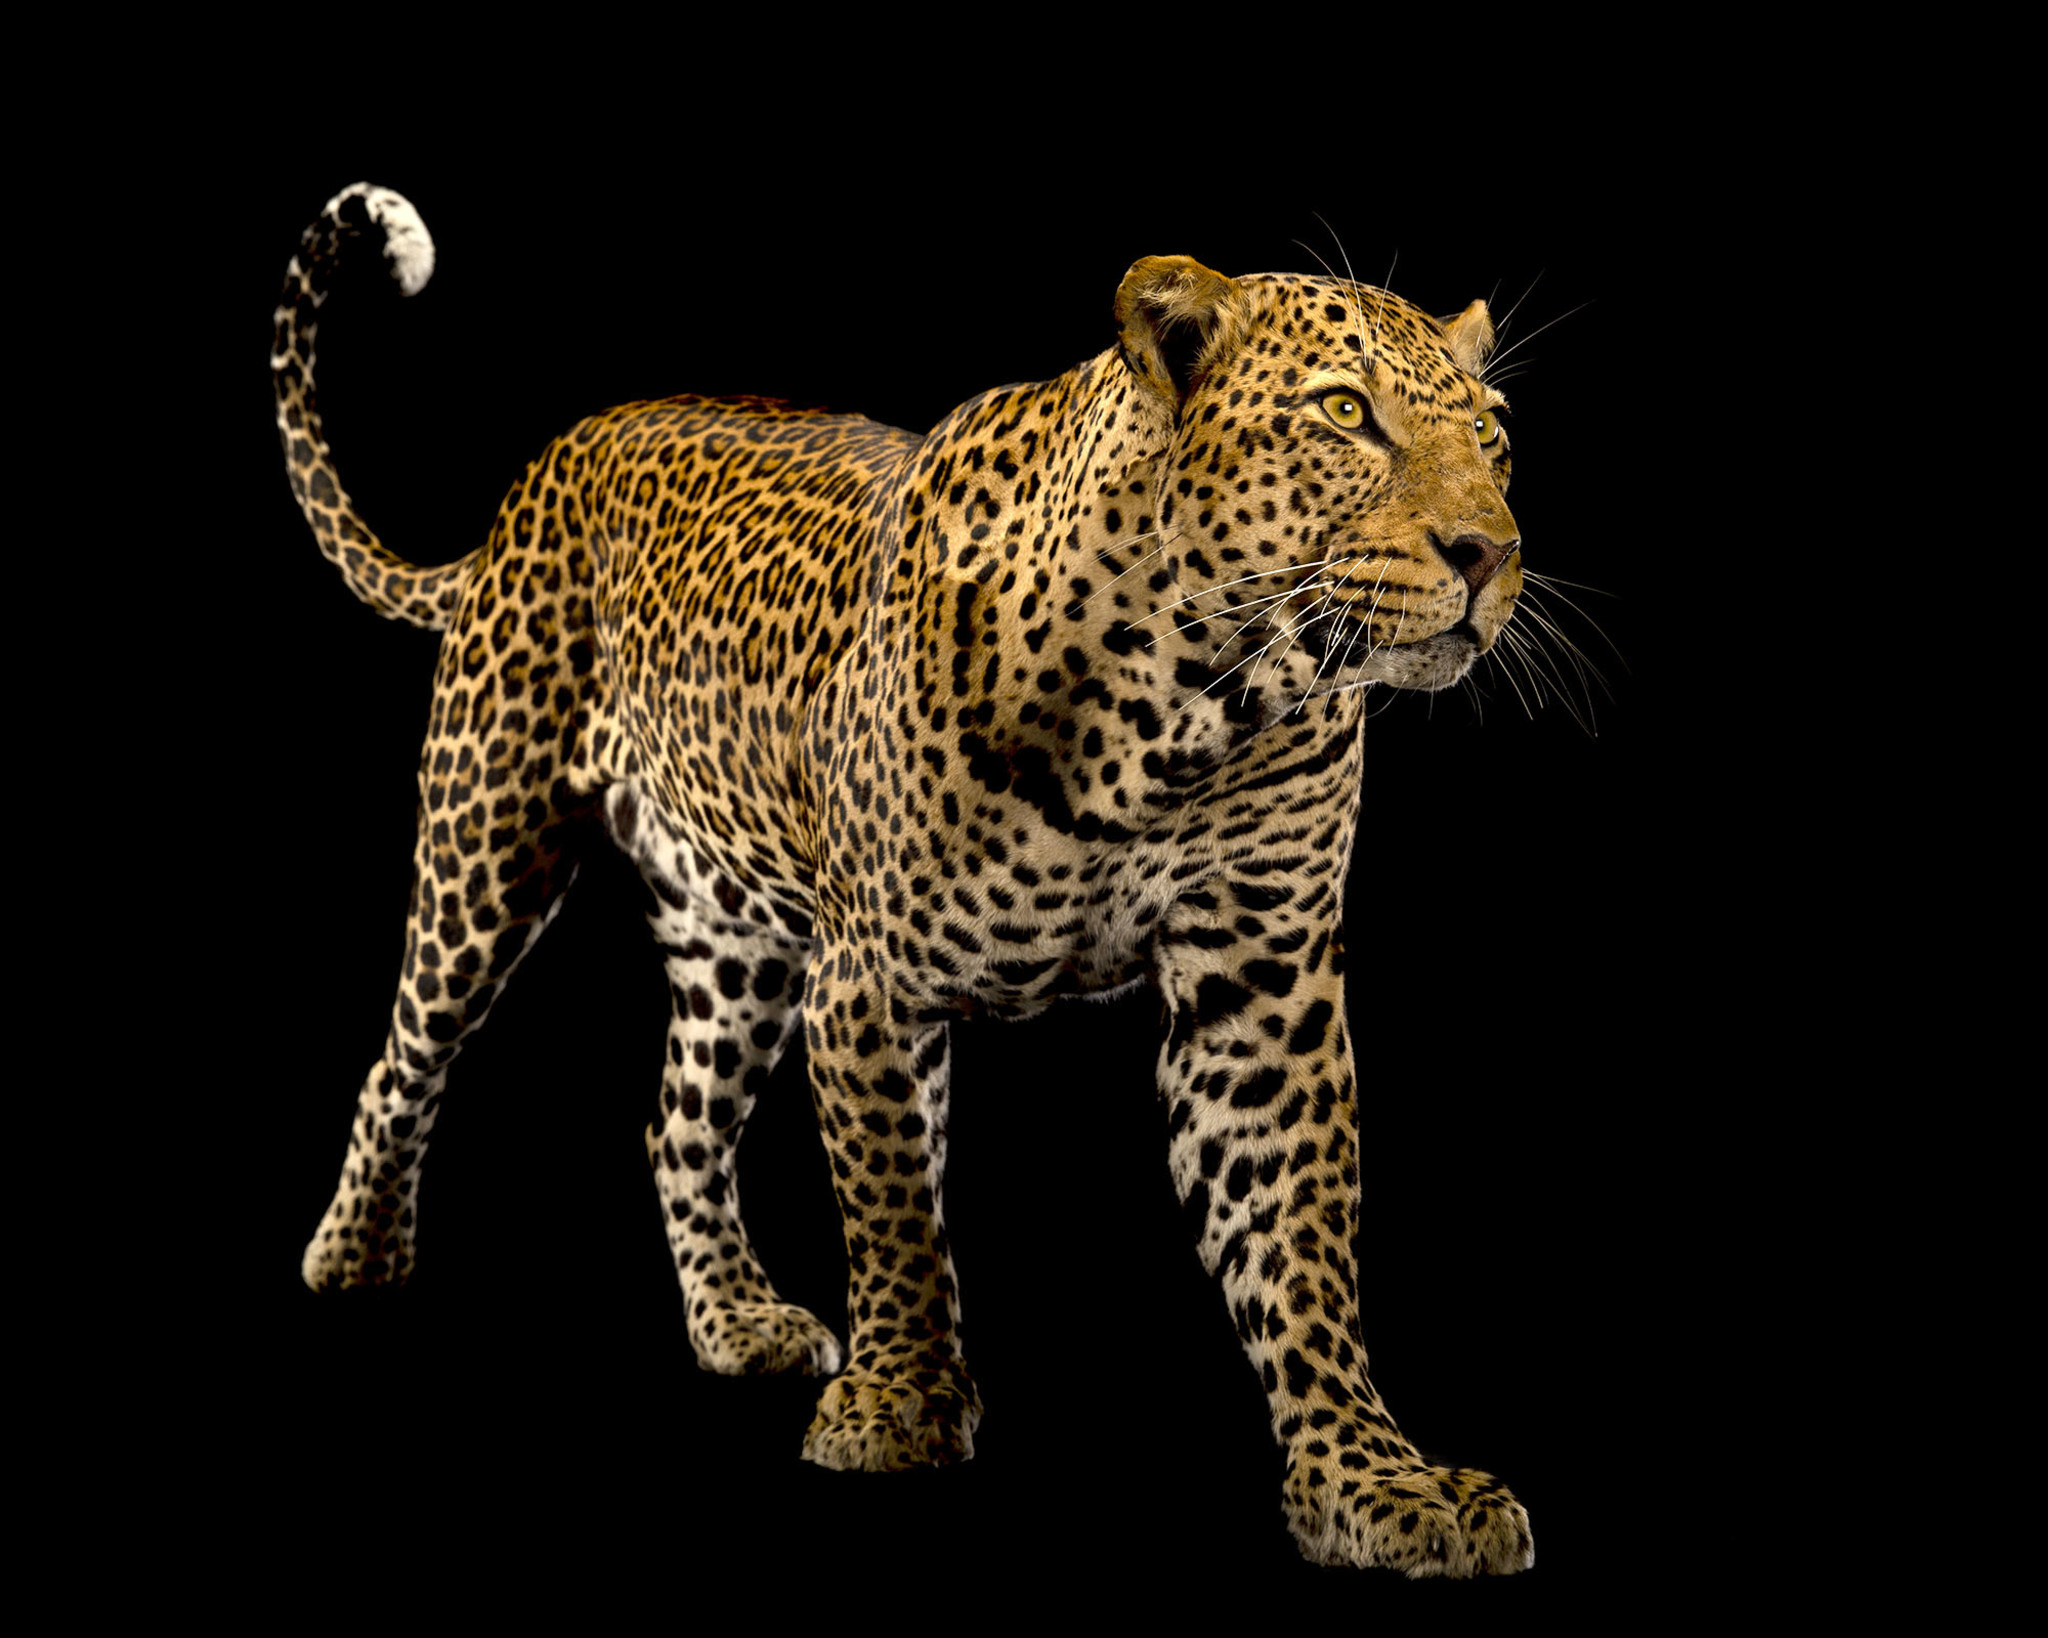 Full mount Leopard